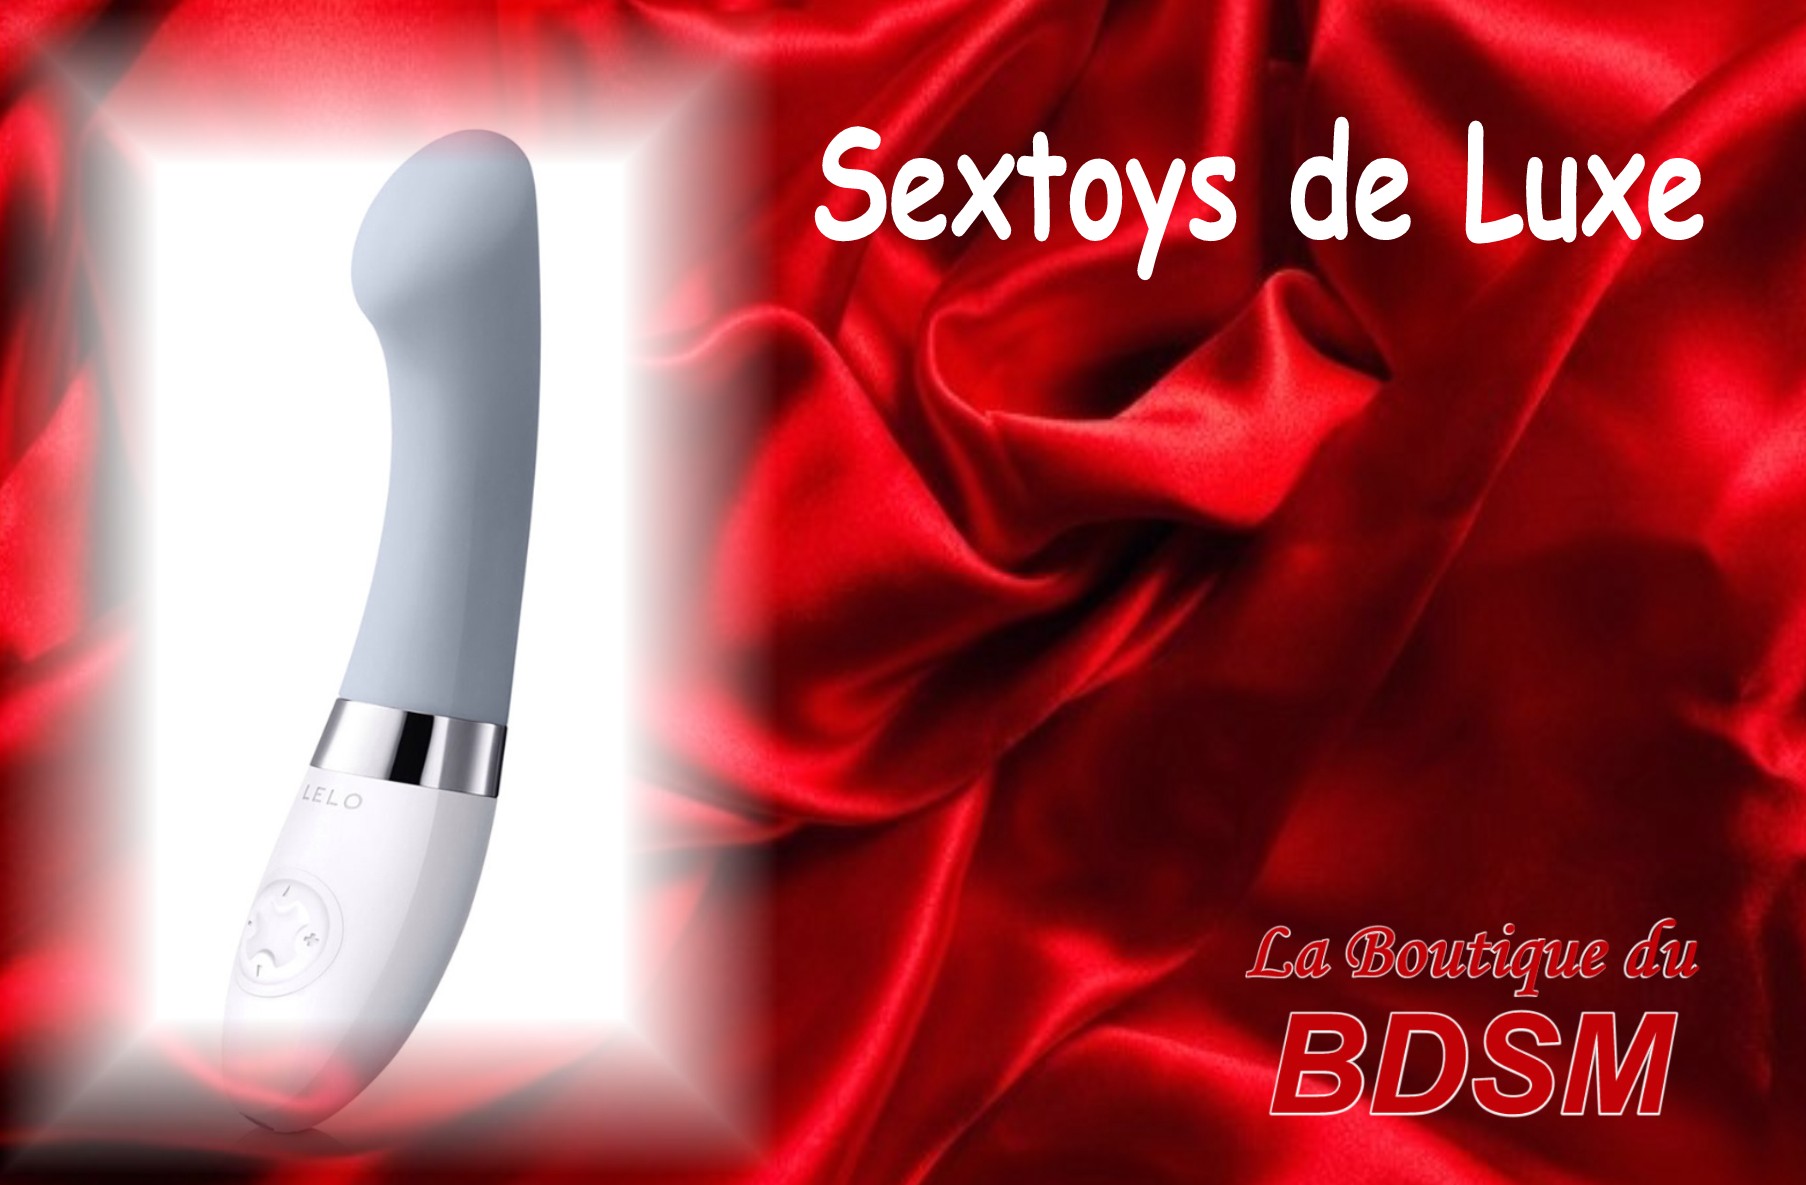 SEXTOYS DE LUXE SALLES-DE-BARBEZIEUX 16